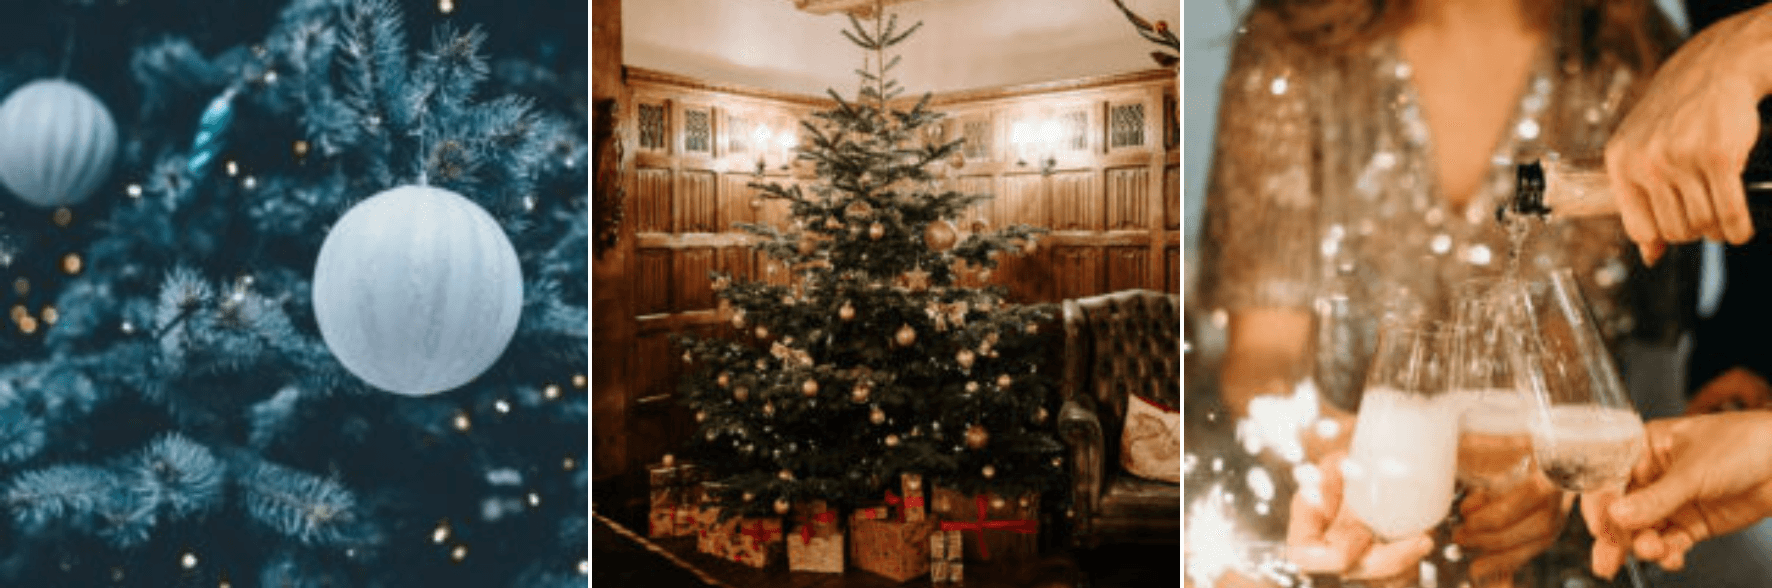 Christmas at Seckford Hall Christmas at Seckford Hall 1